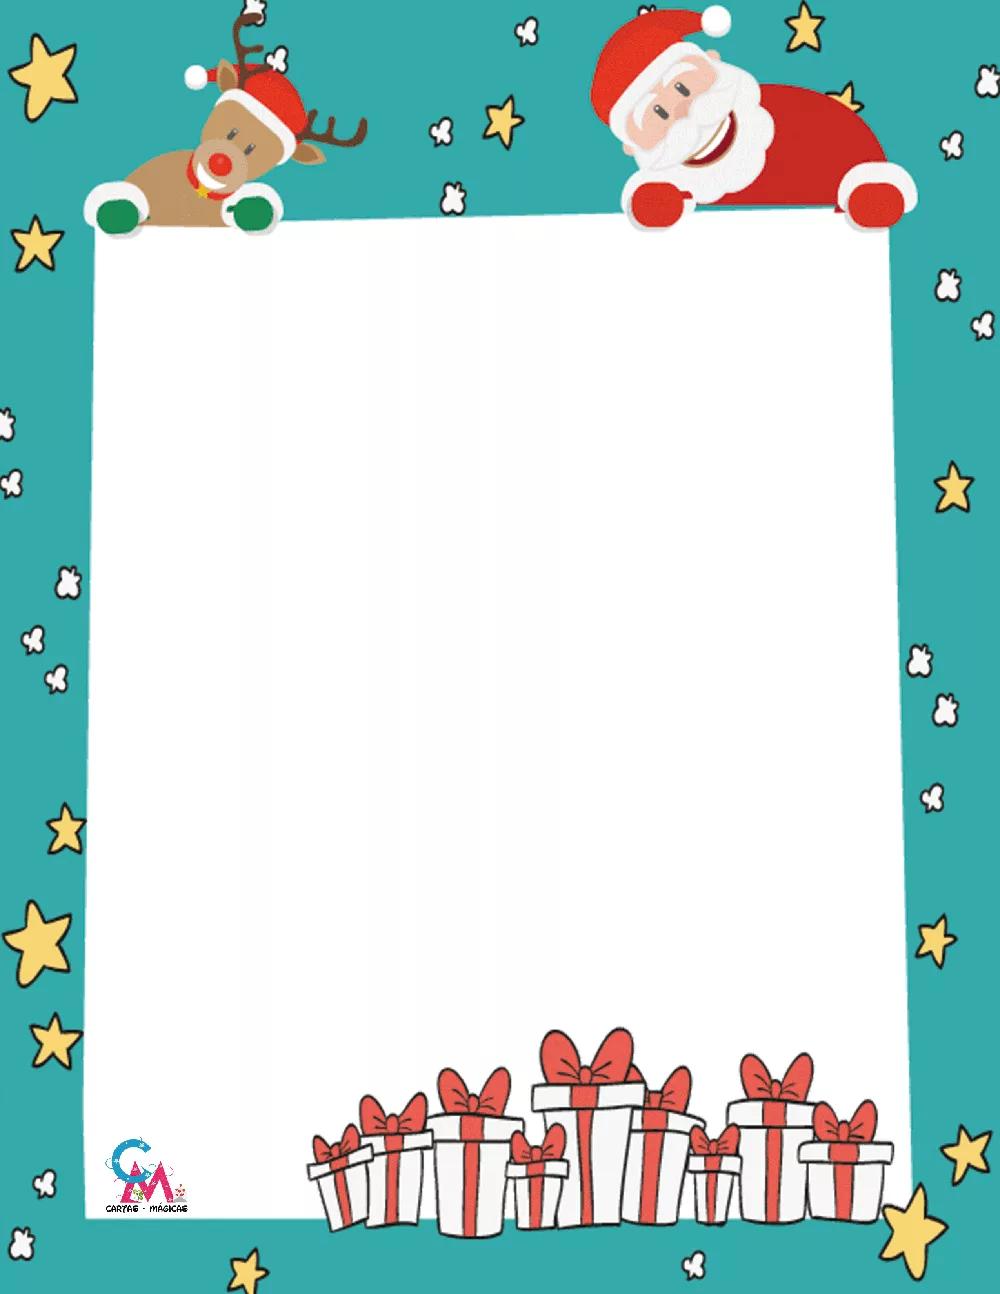 Carta Papá Noel Online Cartas para los Reyes Magos y Papá Noel: descargar, imprimir o enviar online